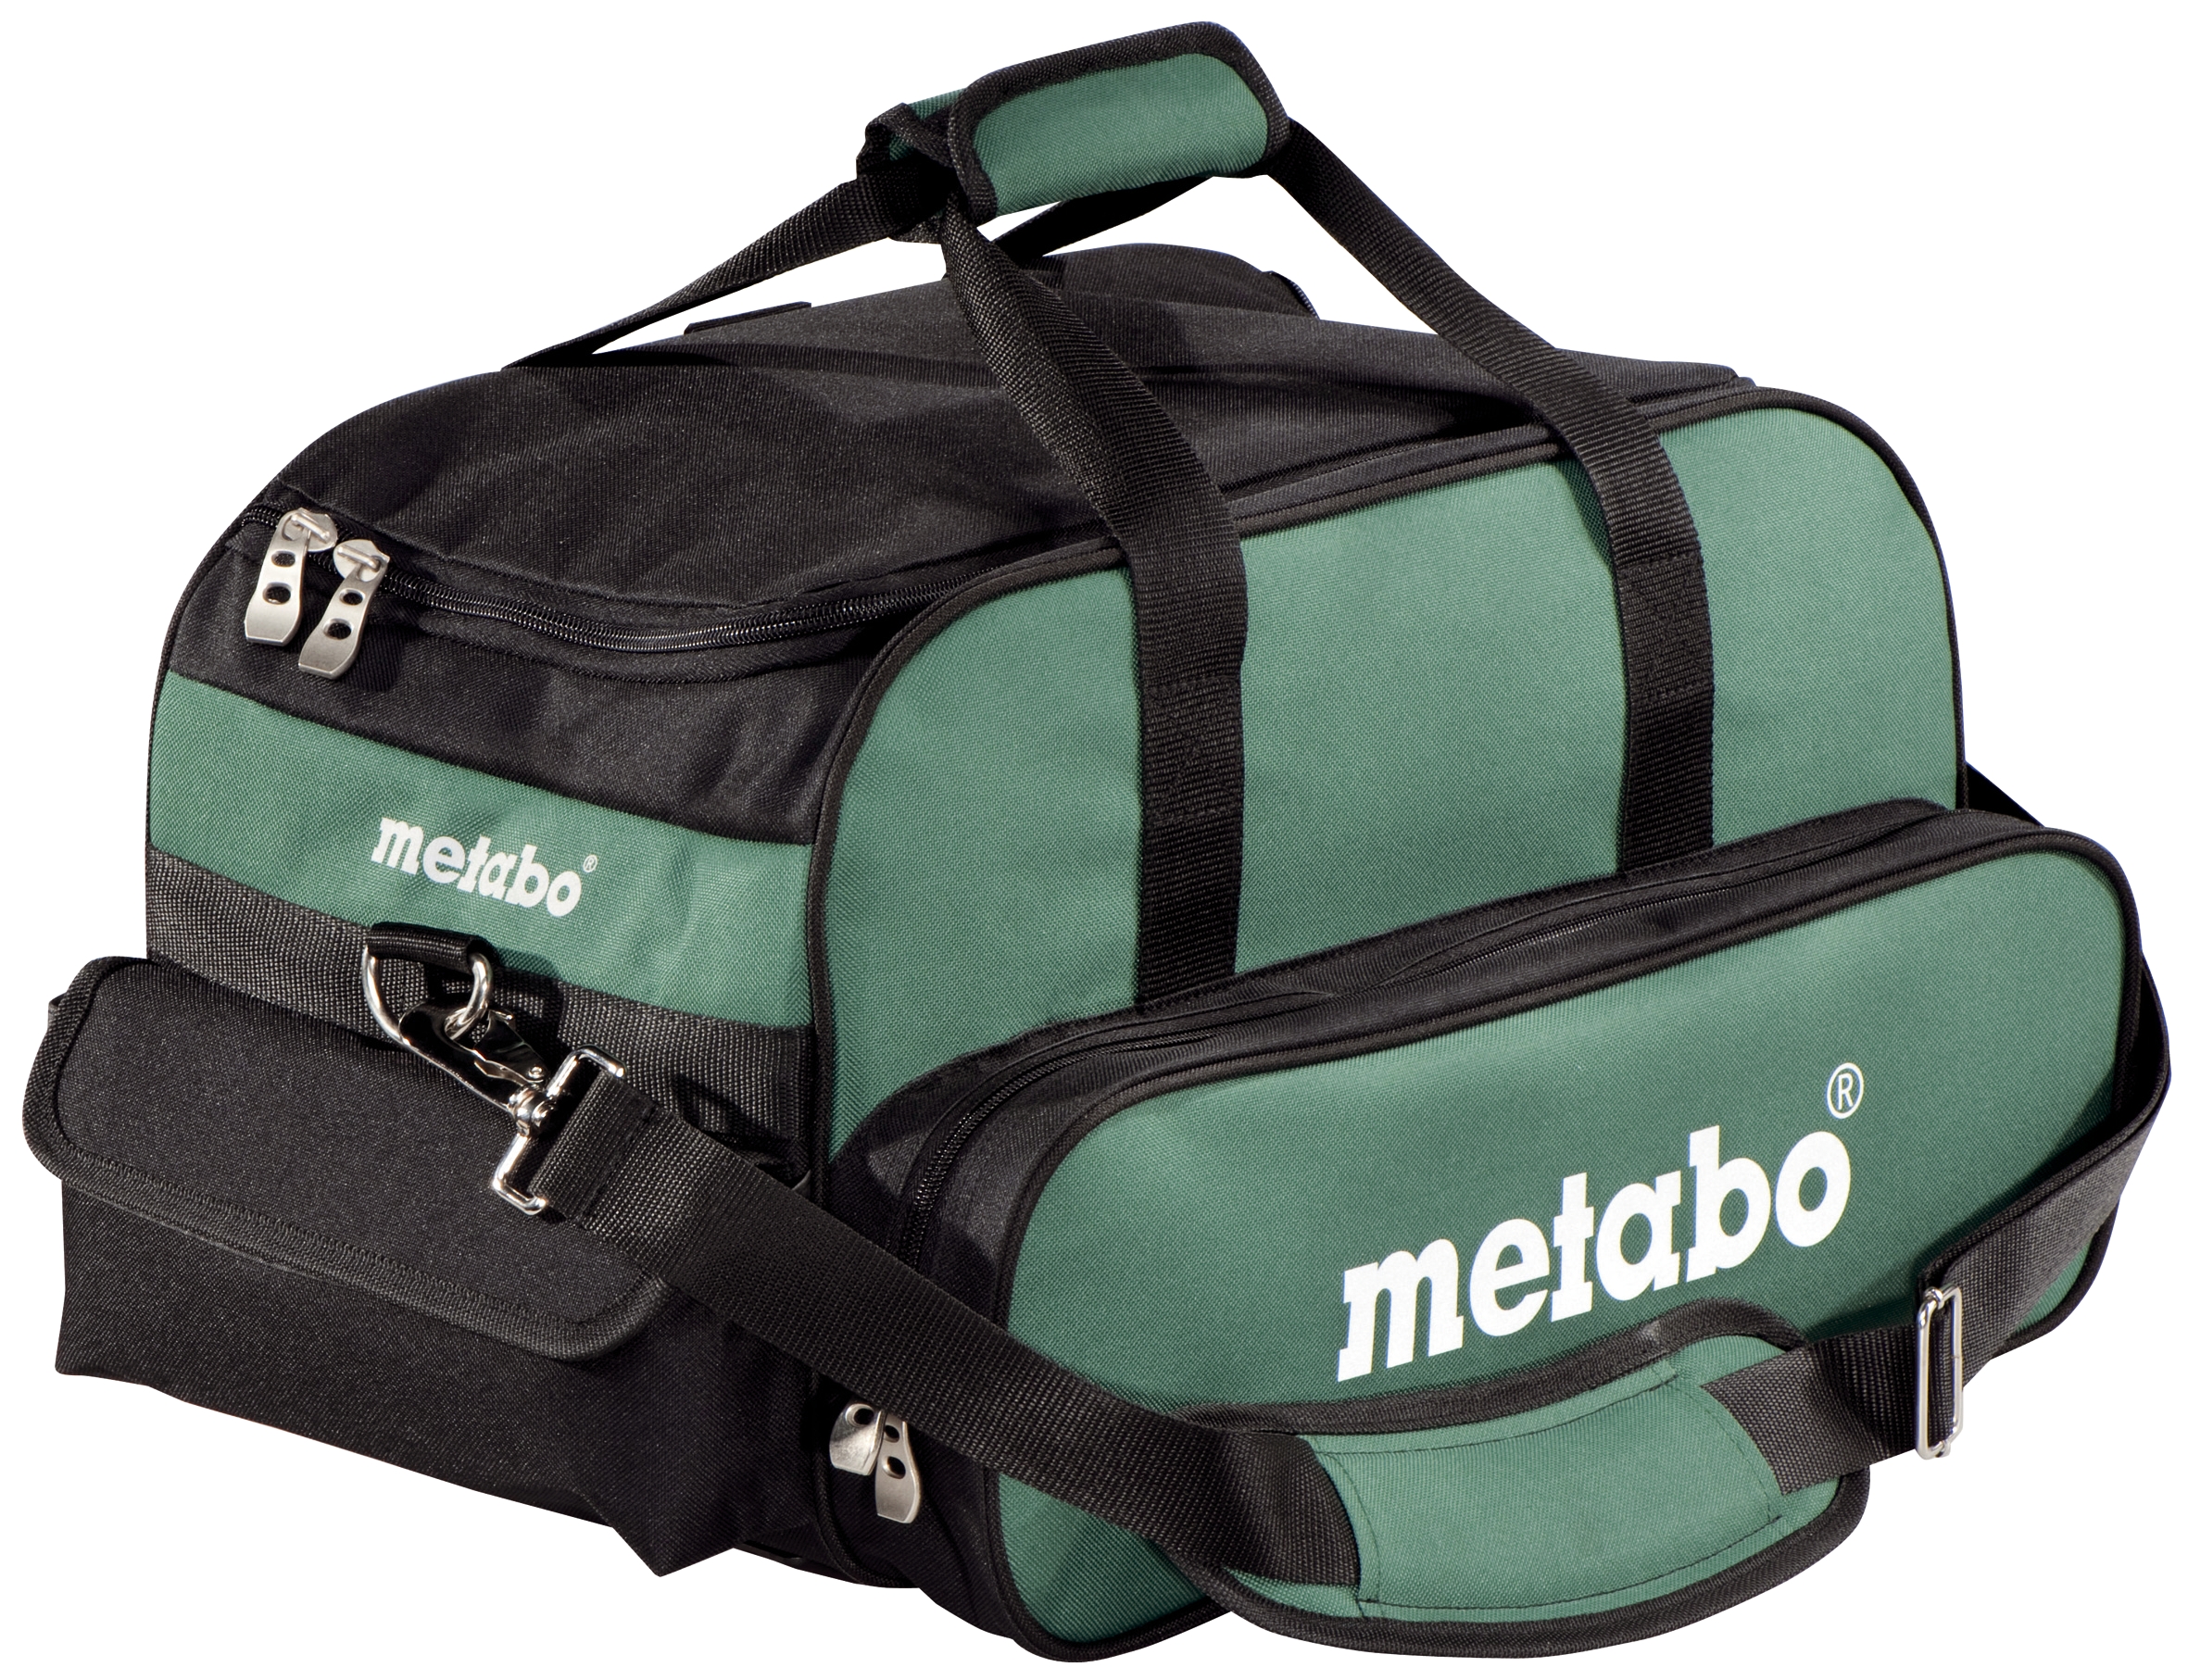 Metabo liten verktøybag, robust og kompakt